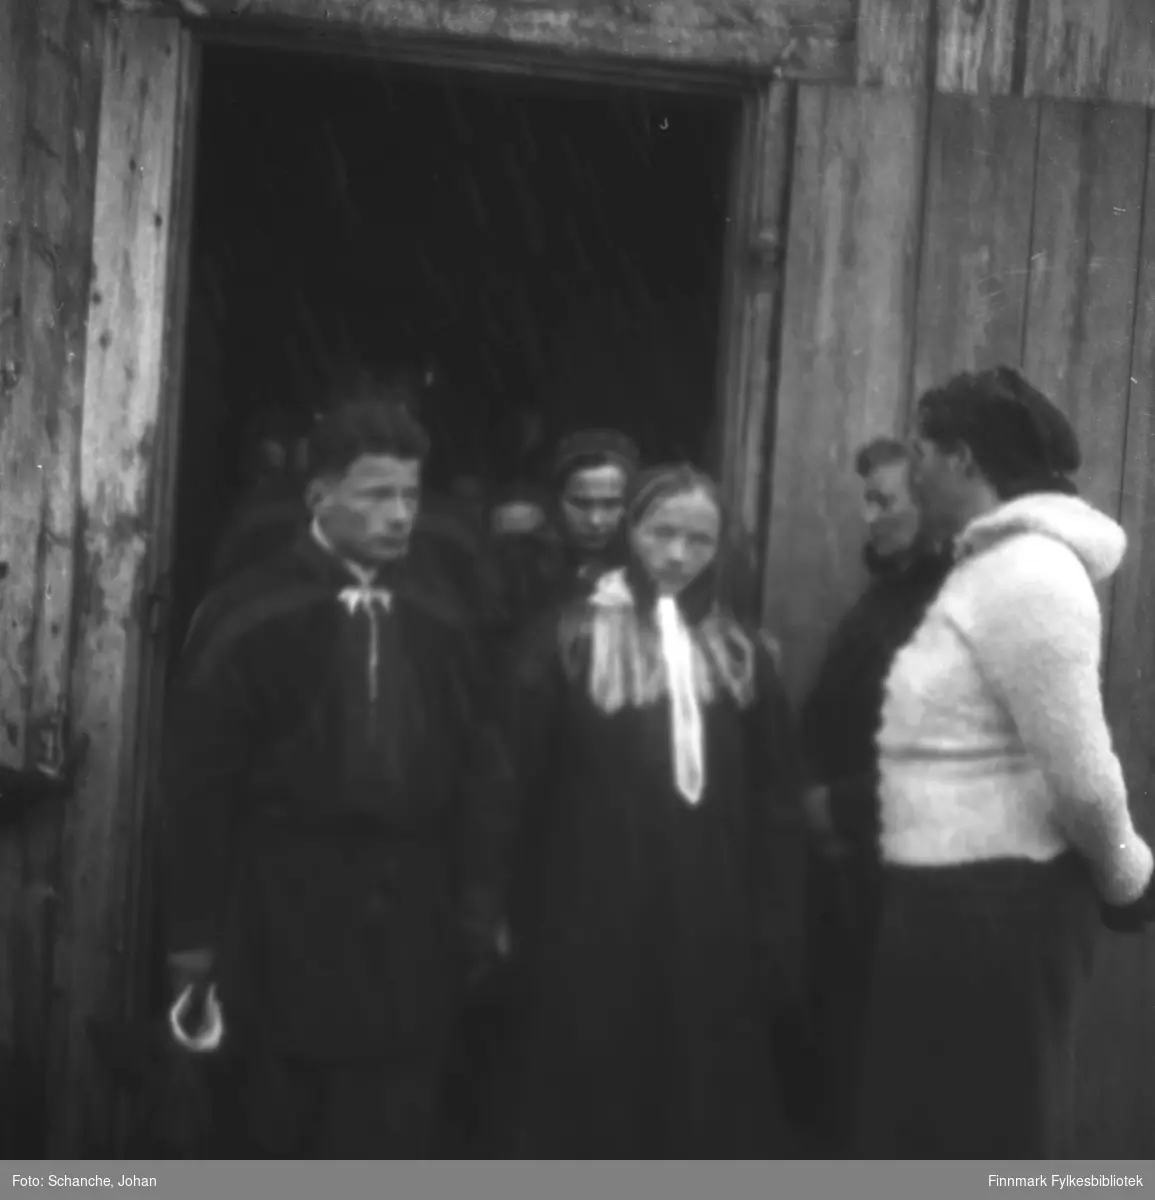 Menn og kvinner i samedrakt kommer ut av Polmak kirke påsken -46.  Bildet er tatt ved døråpningen, to kvinner står ved paret i sametrakt som komer ut av kirka. Muligens brudepar?